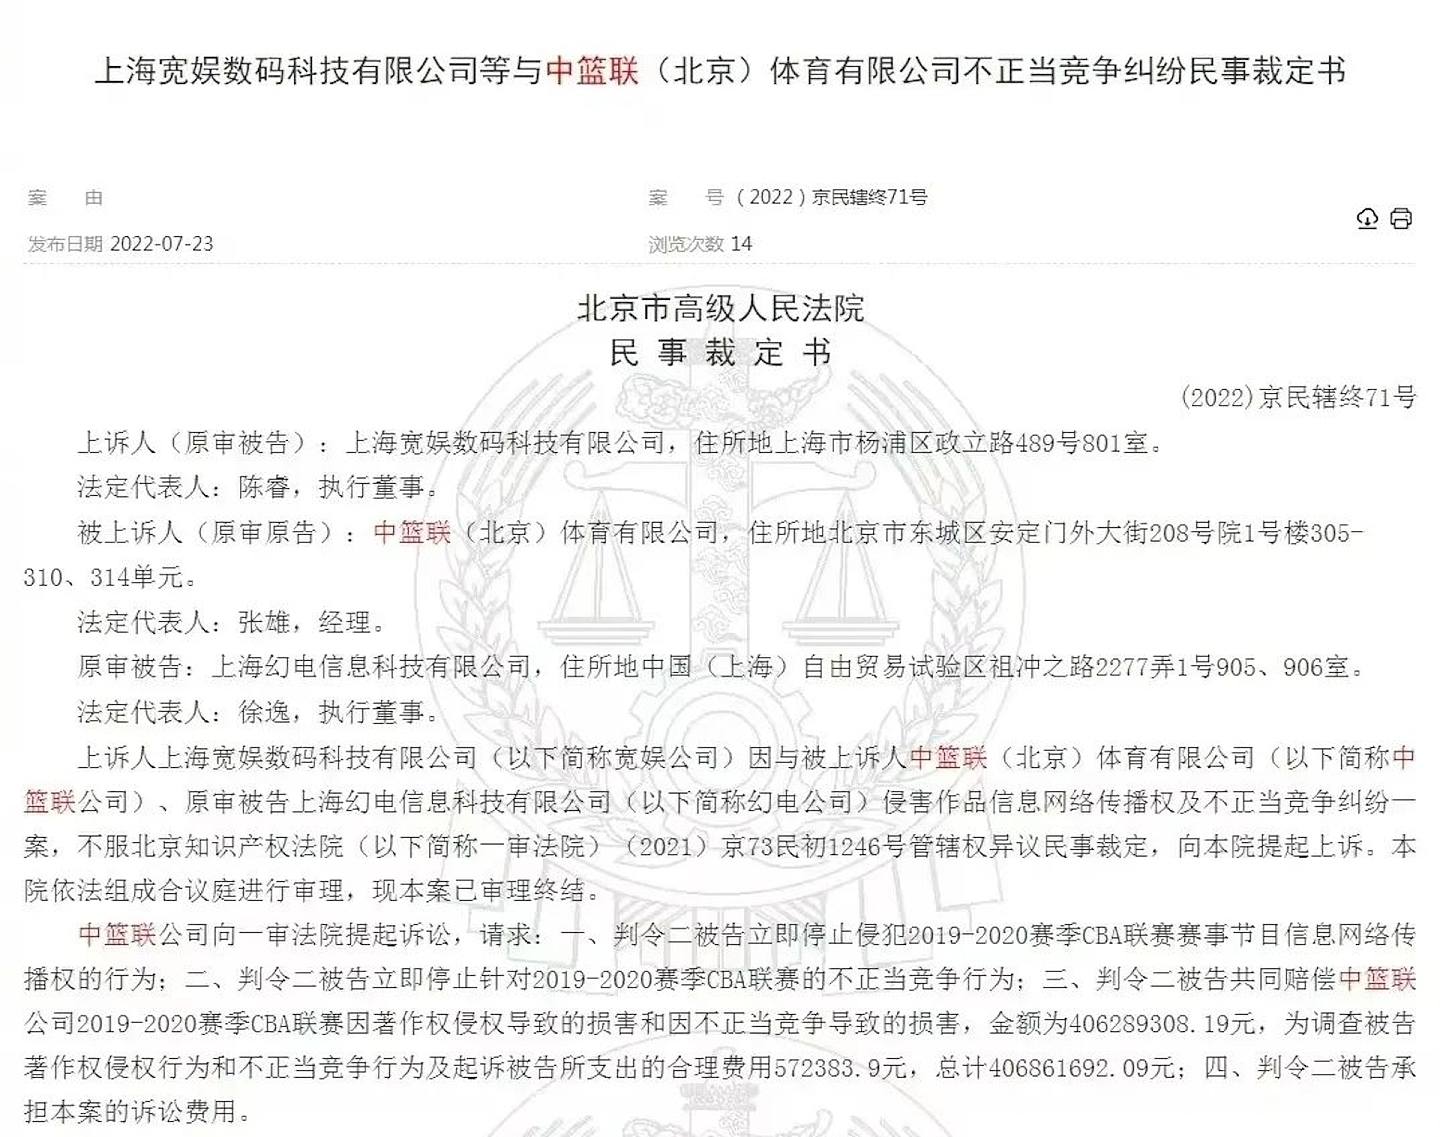 北京市高级人民法院出具民事裁定书。